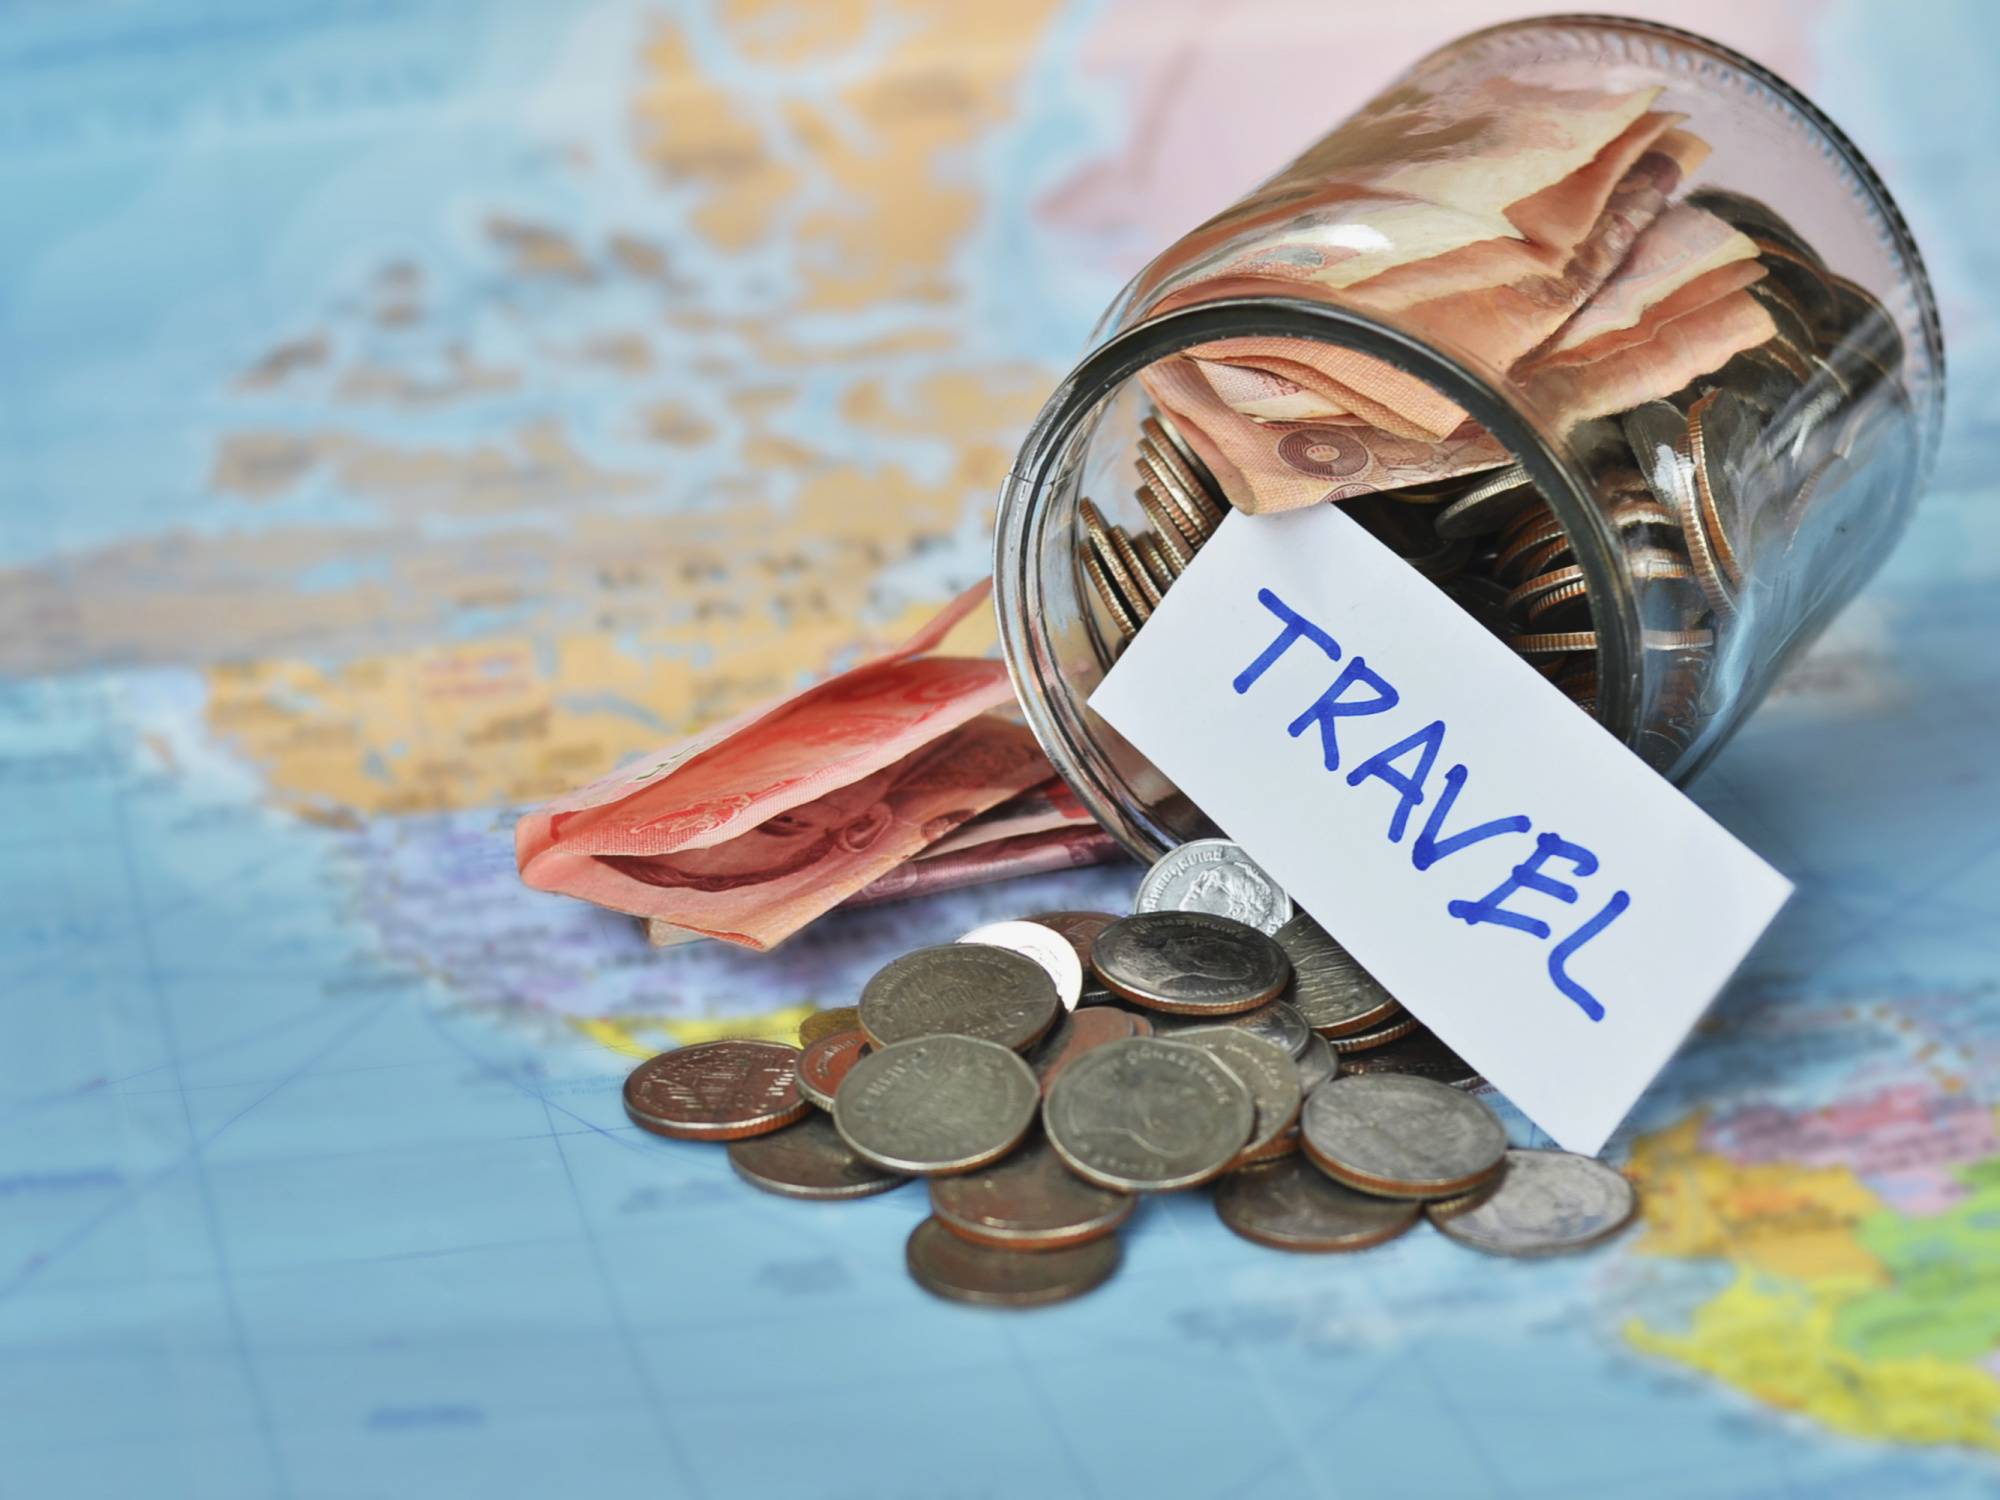 Как сэкономить на путешествии - блог о самостоятельных путешествиях